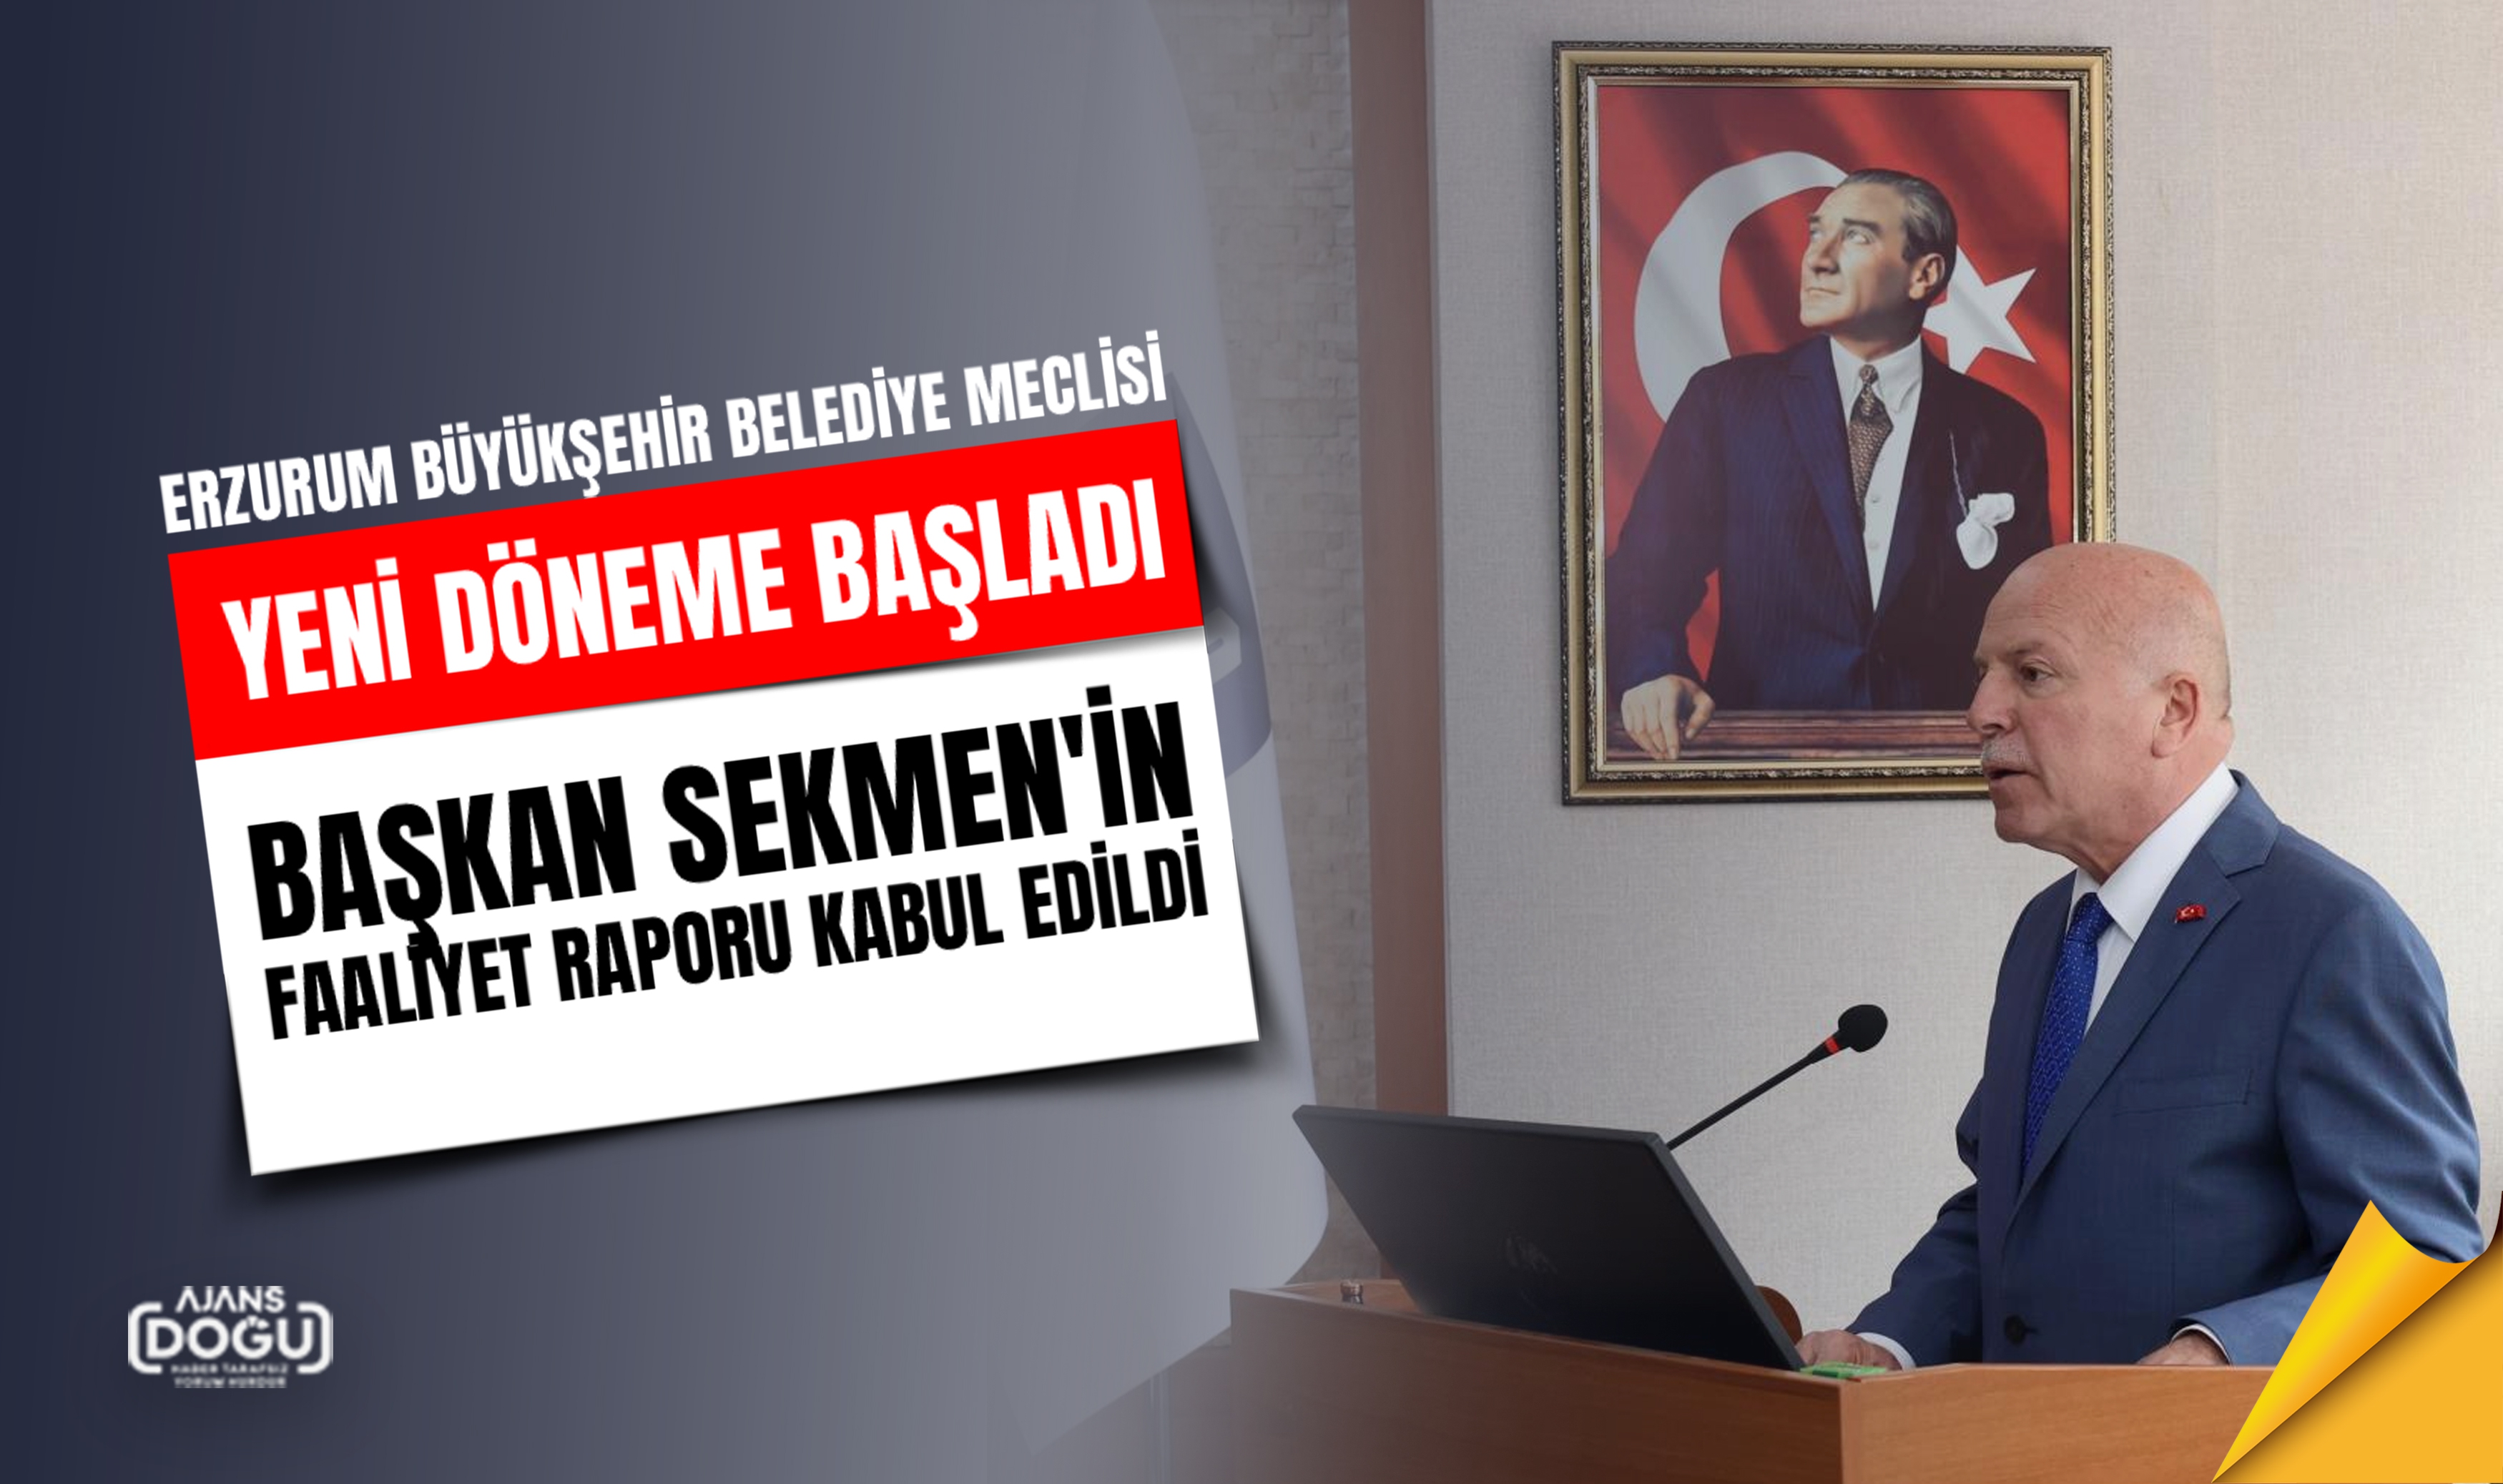 Erzurum Büyükşehir Belediyesi’nin yeni dönemdeki meclisi toplandı